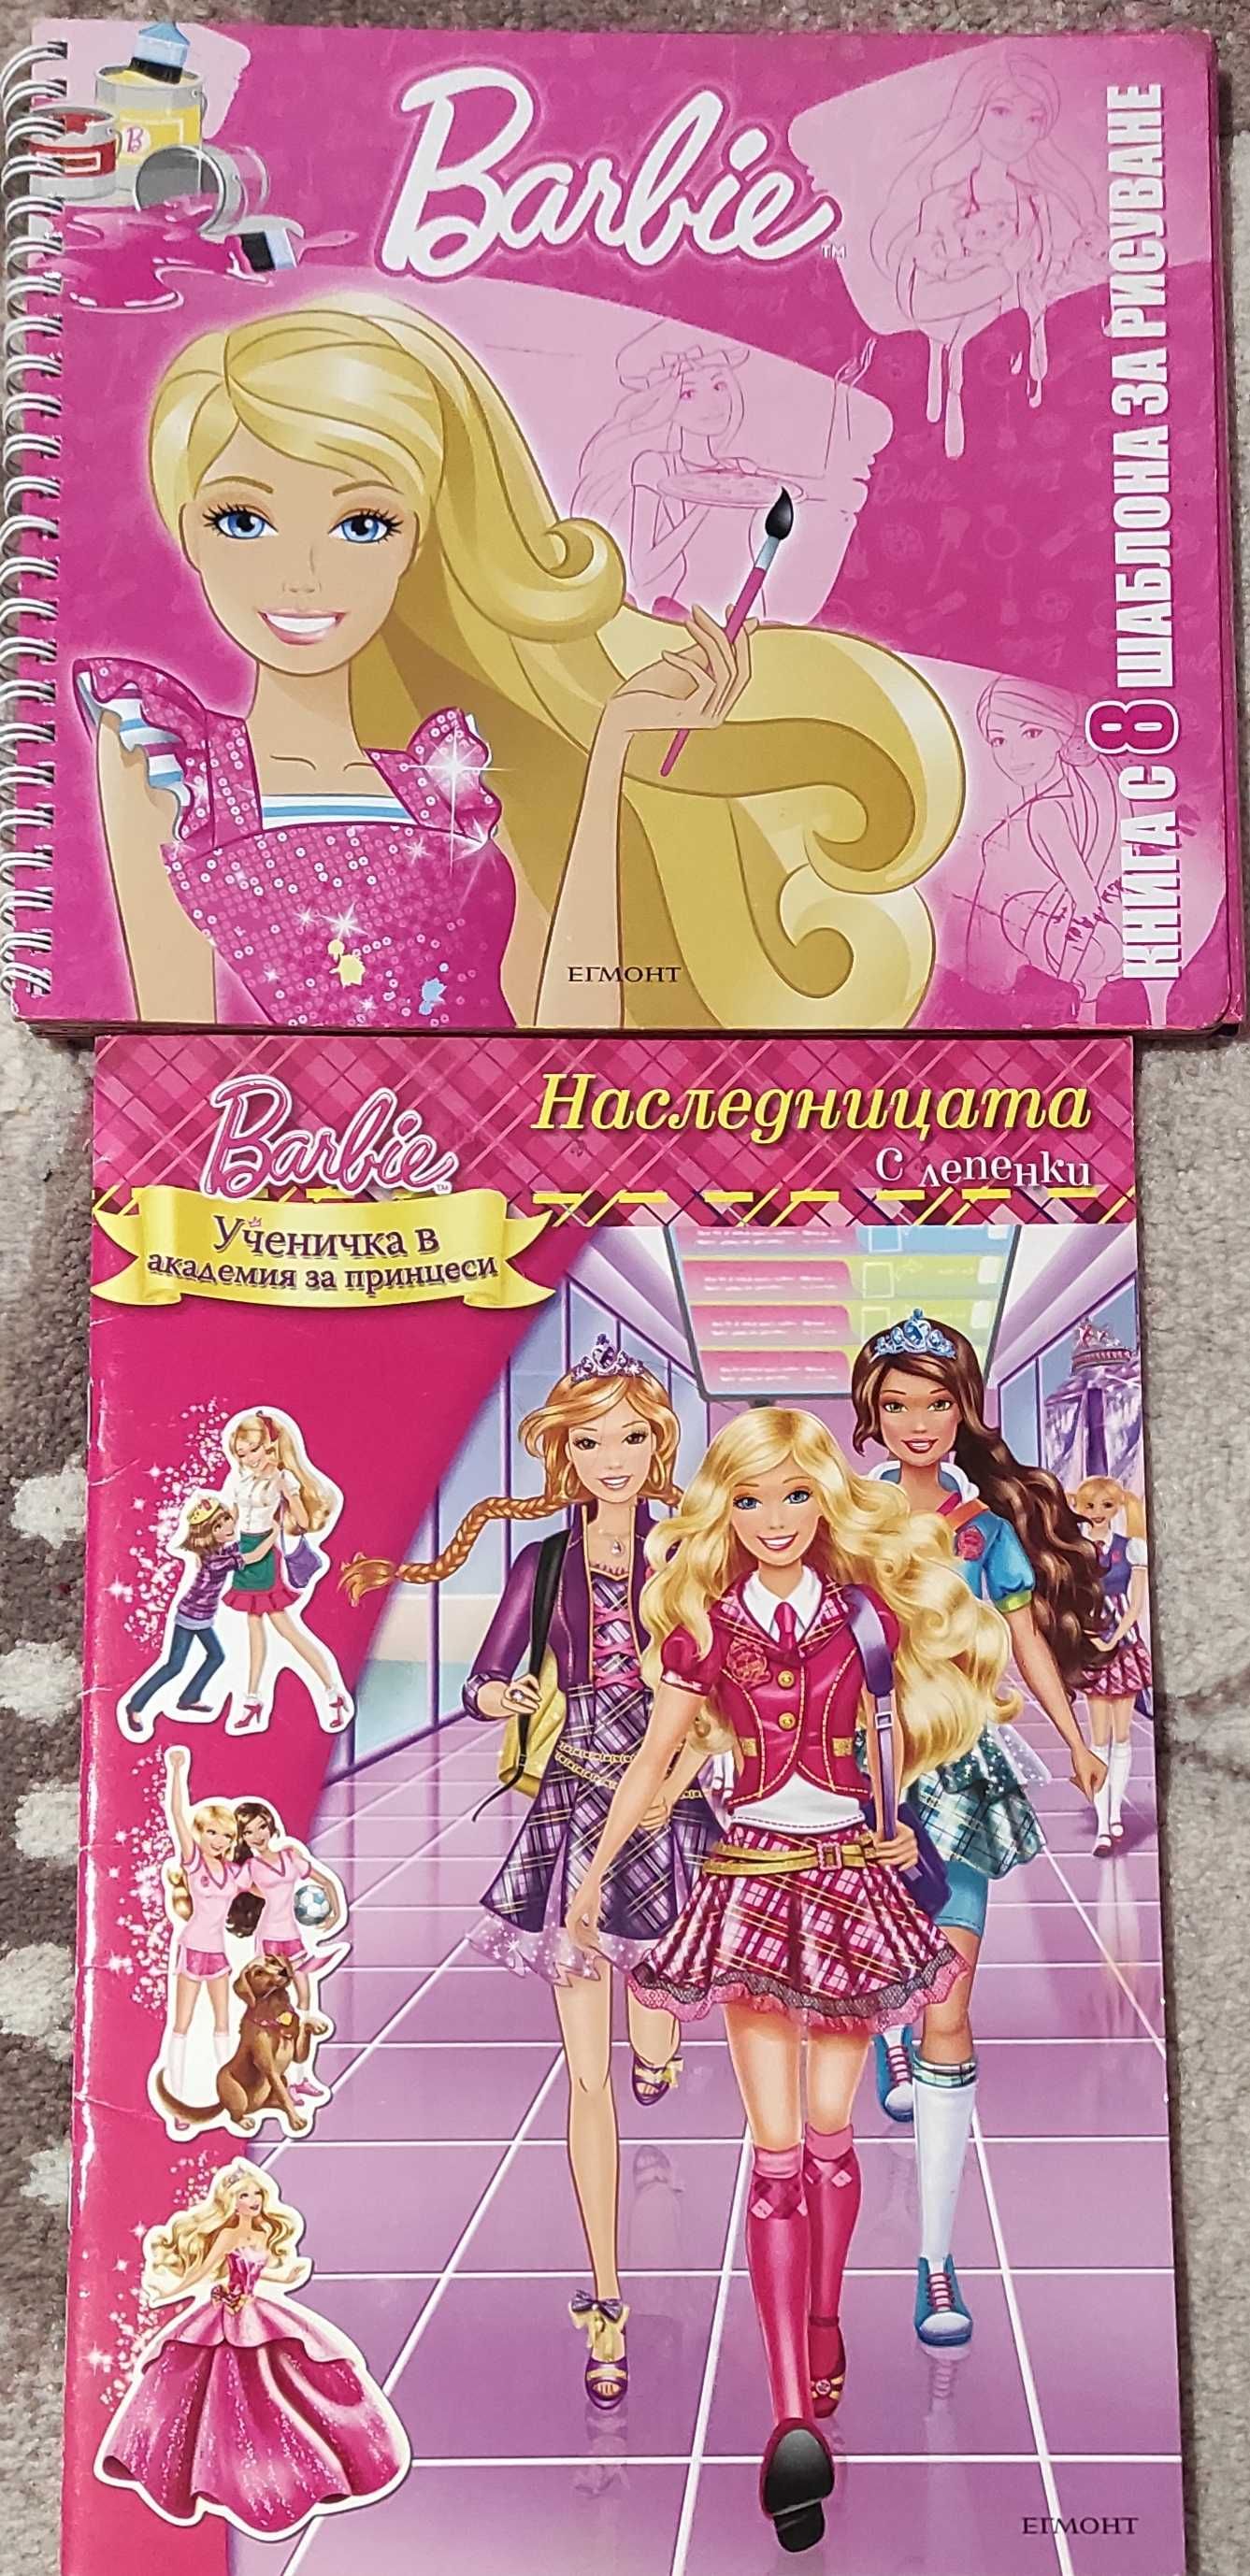 Поредици детски книжки: Disney, Barbie, Winx и др.